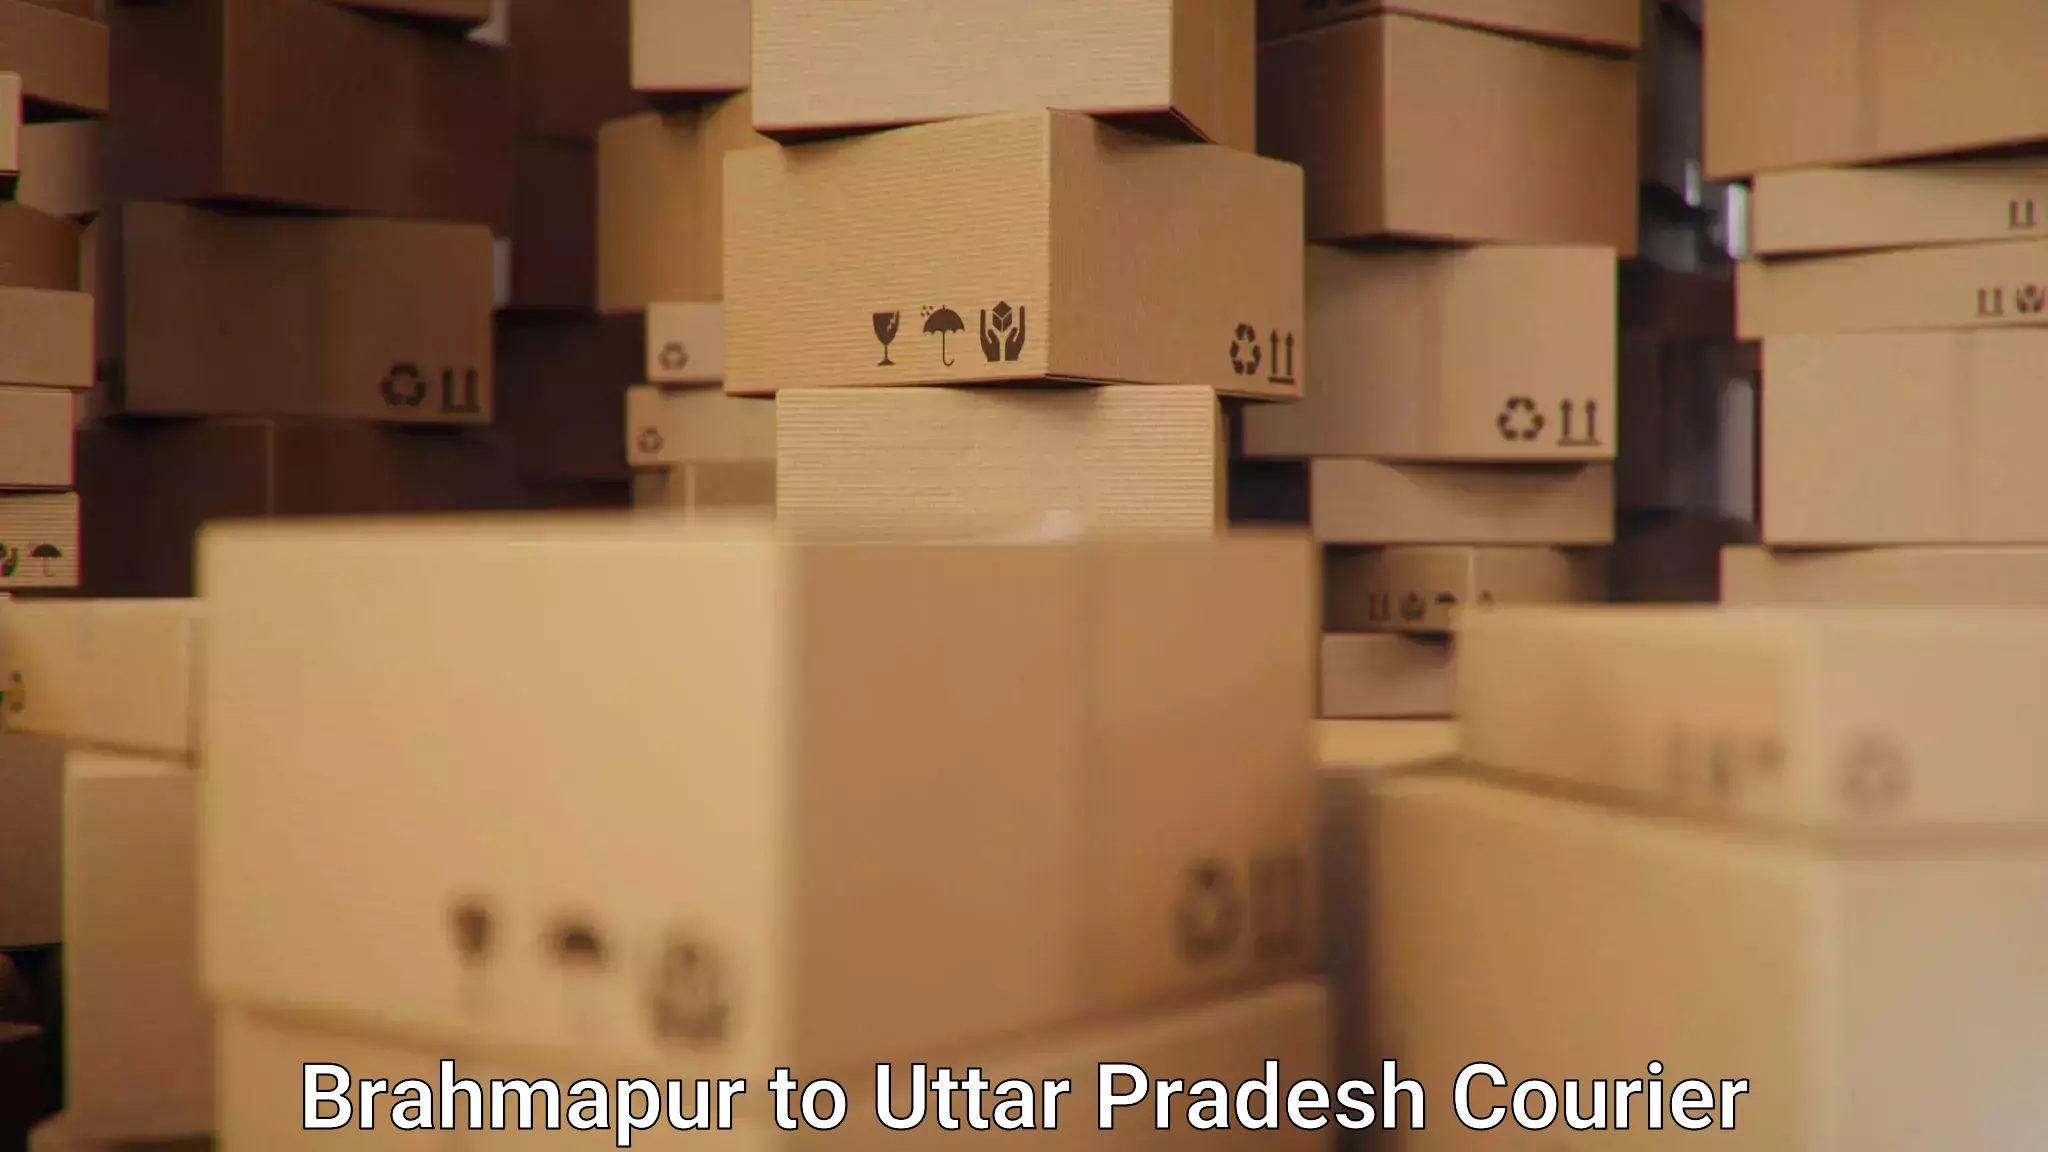 Efficient freight service Brahmapur to Khair